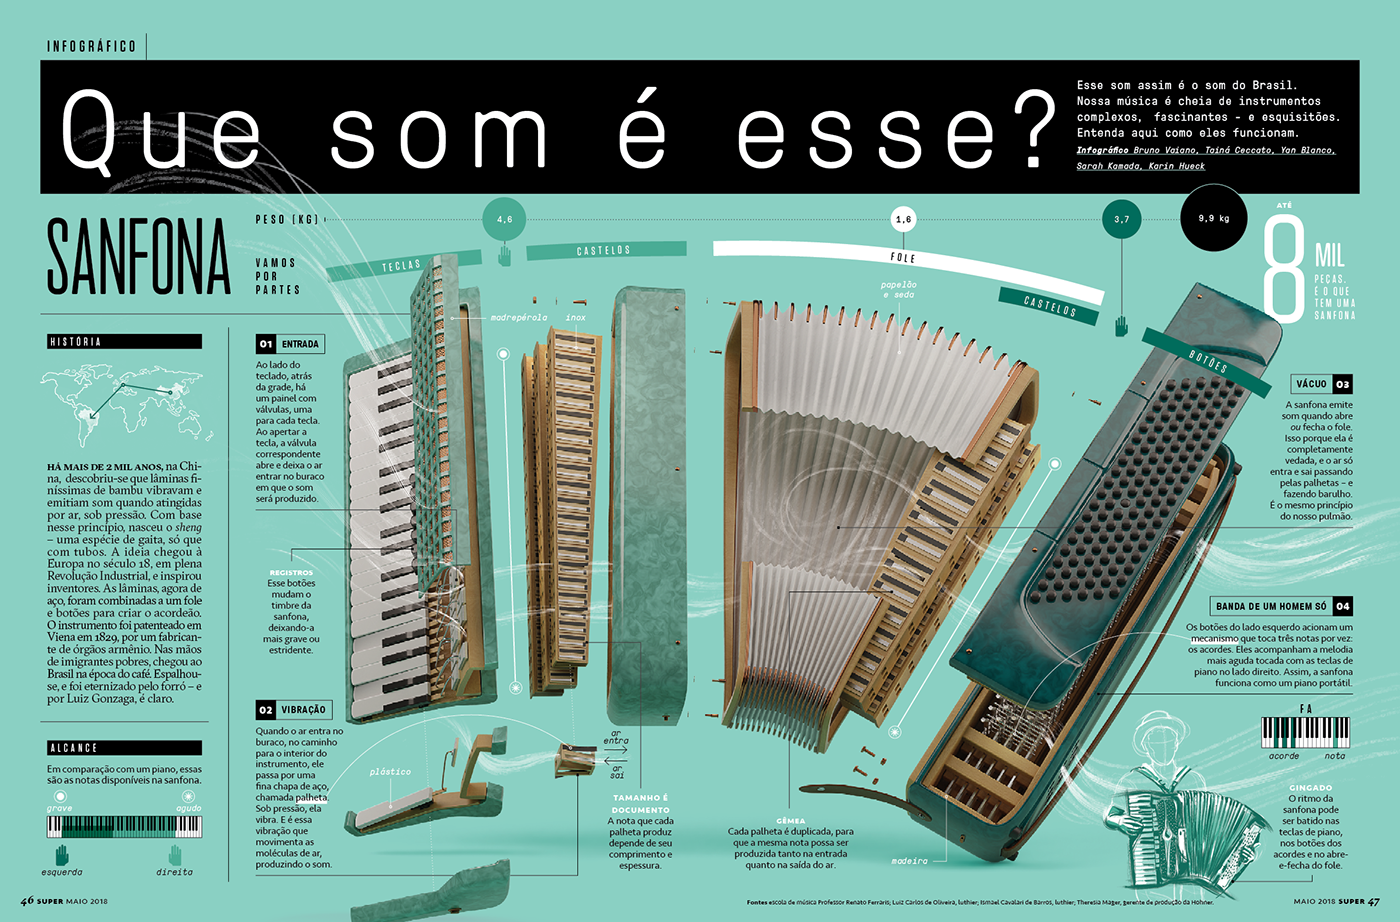 Brazil music Instrumentos brasileiros Sanfona accordion cuica Rabeca Viola berimbau